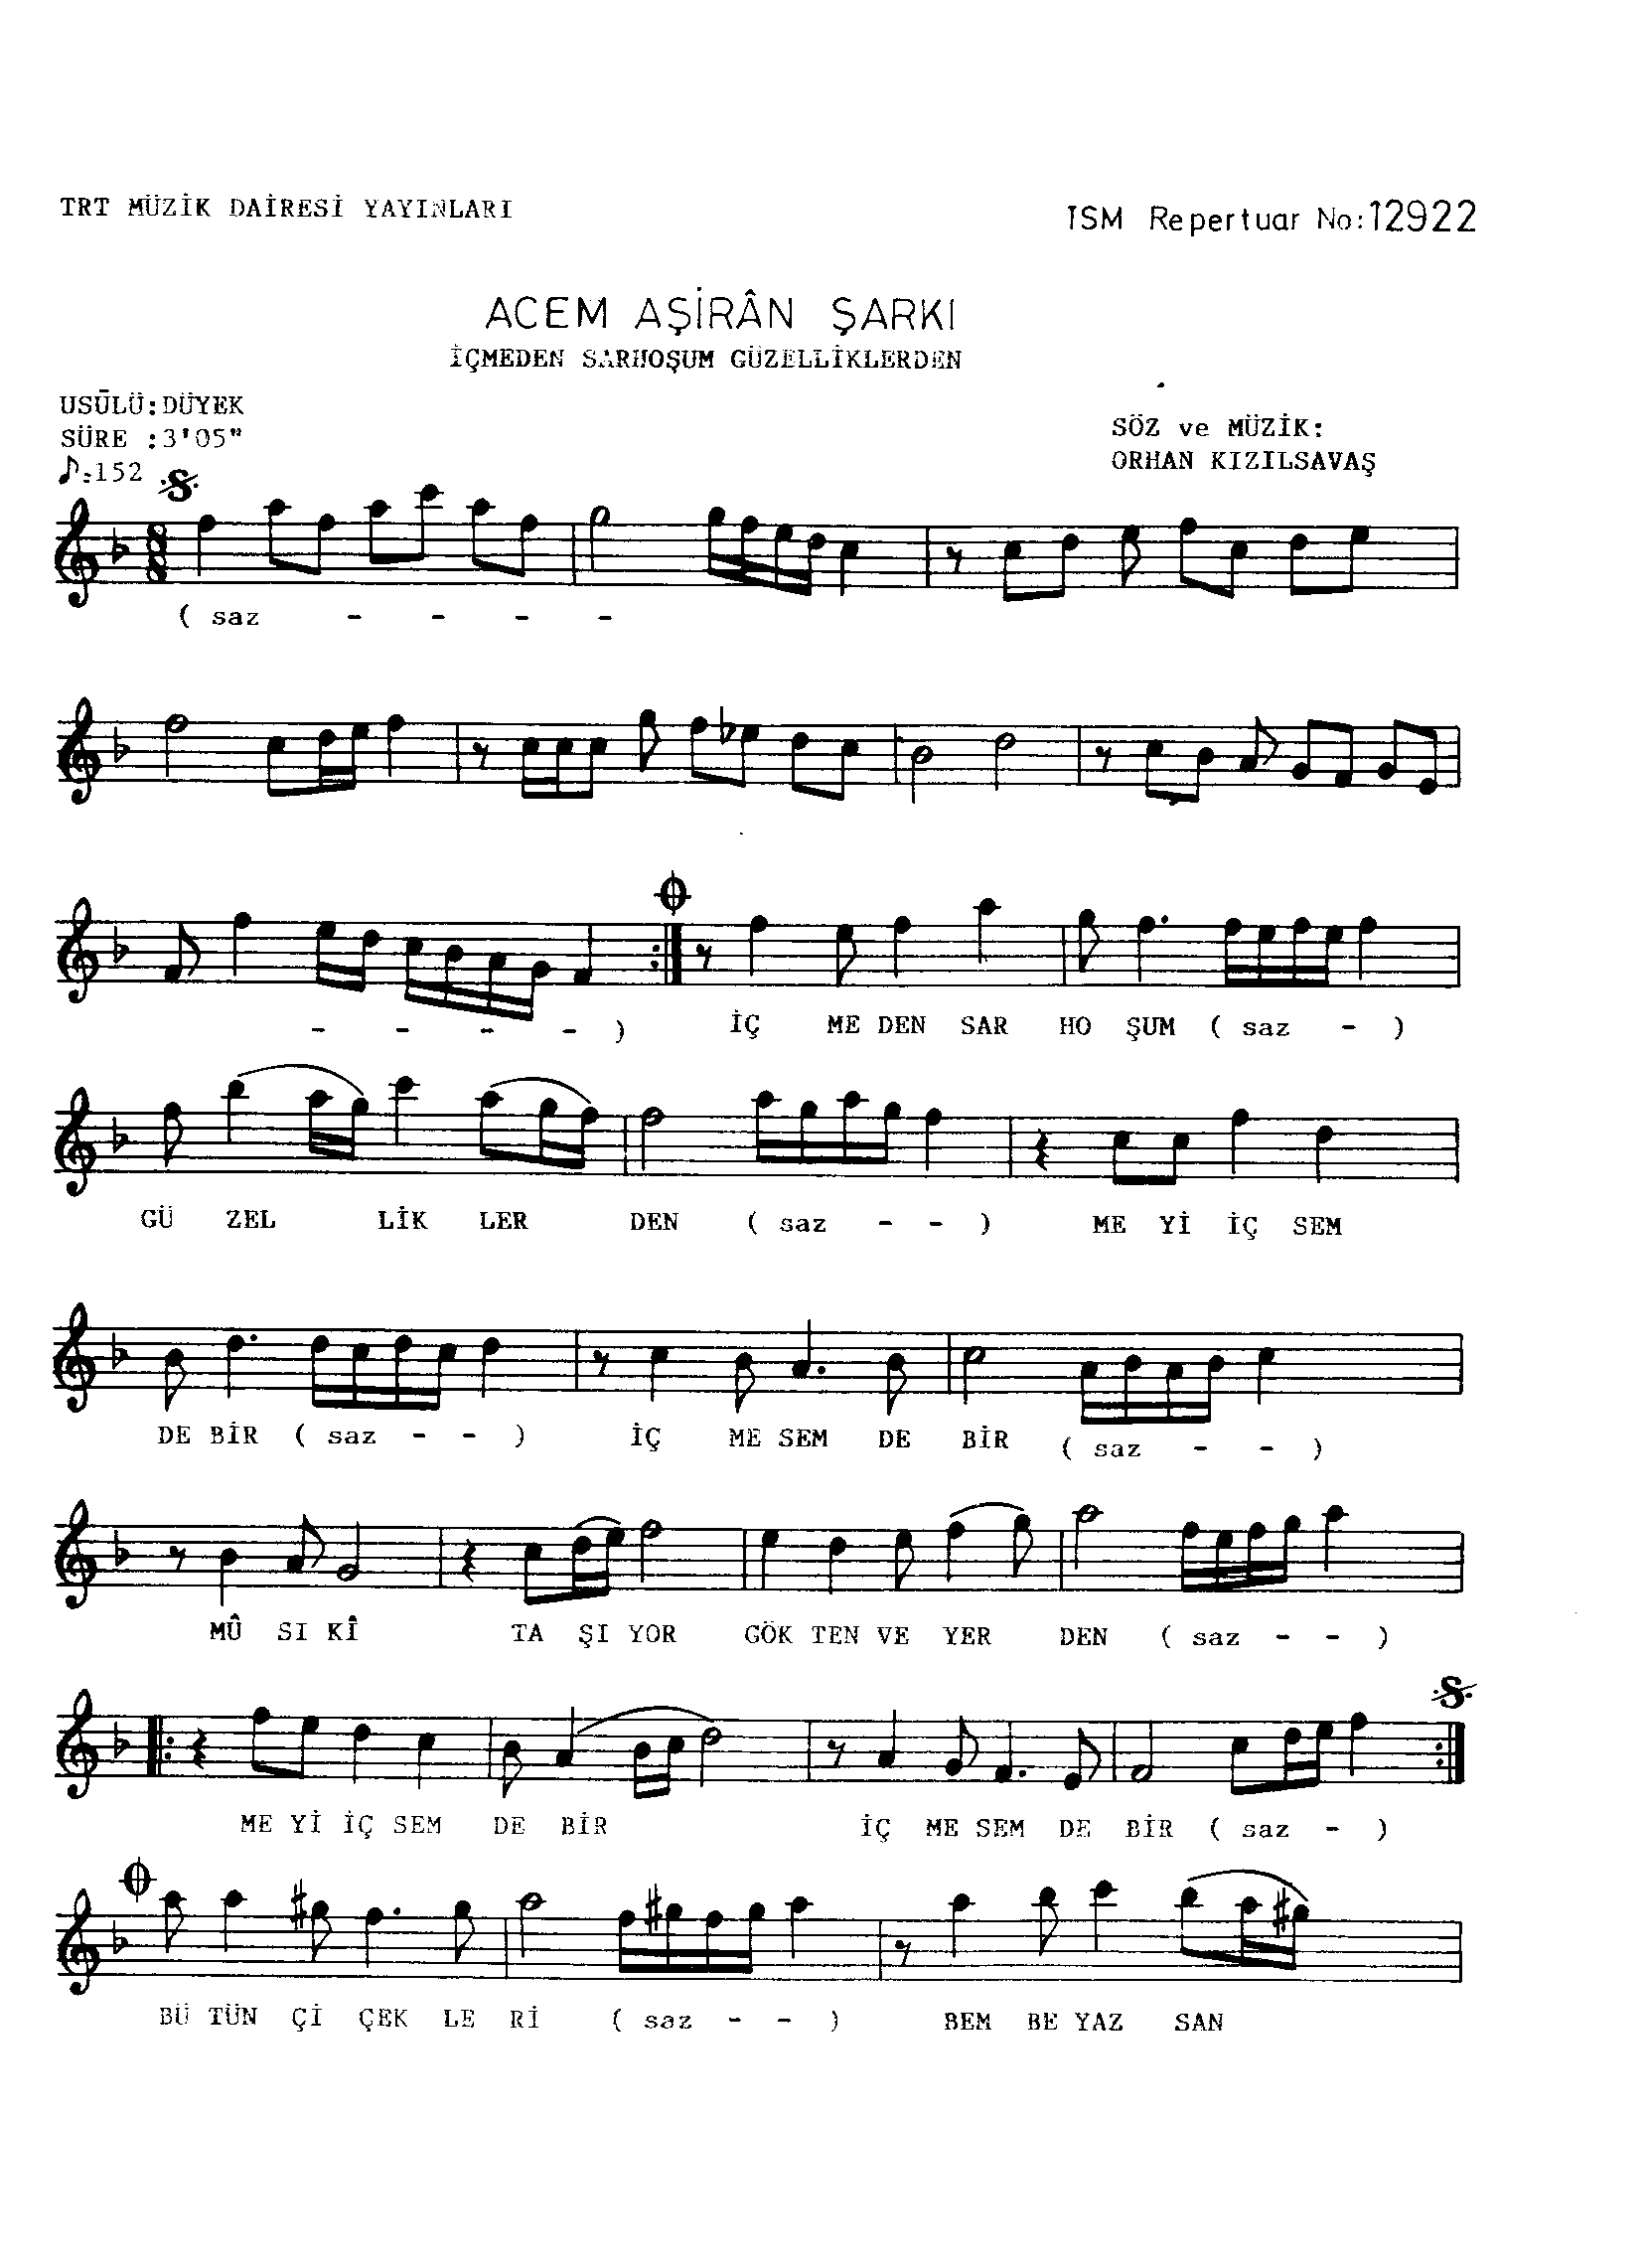 Acem Aşîrân - Şarkı - Orhan Kızılsavaş - Sayfa 1